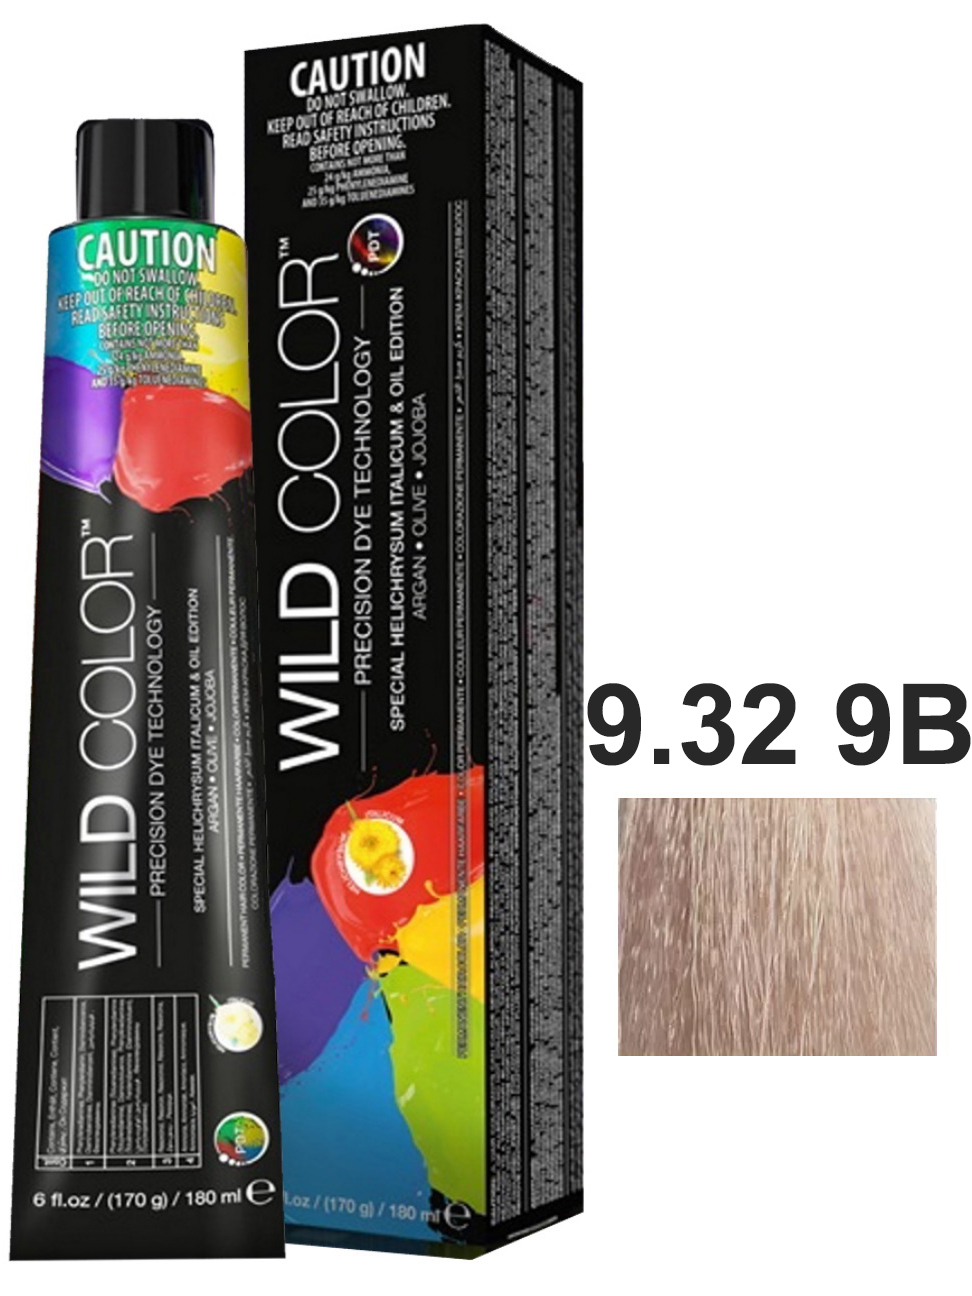 Крем-краска для волос WildColor PERMANENT COLOR 9.32 9B очень светлый блонд бежевый 180 мл краска для волос wildcolor без аммиака 5 8 5wb теплый коричневый светло коричневый 180 мл